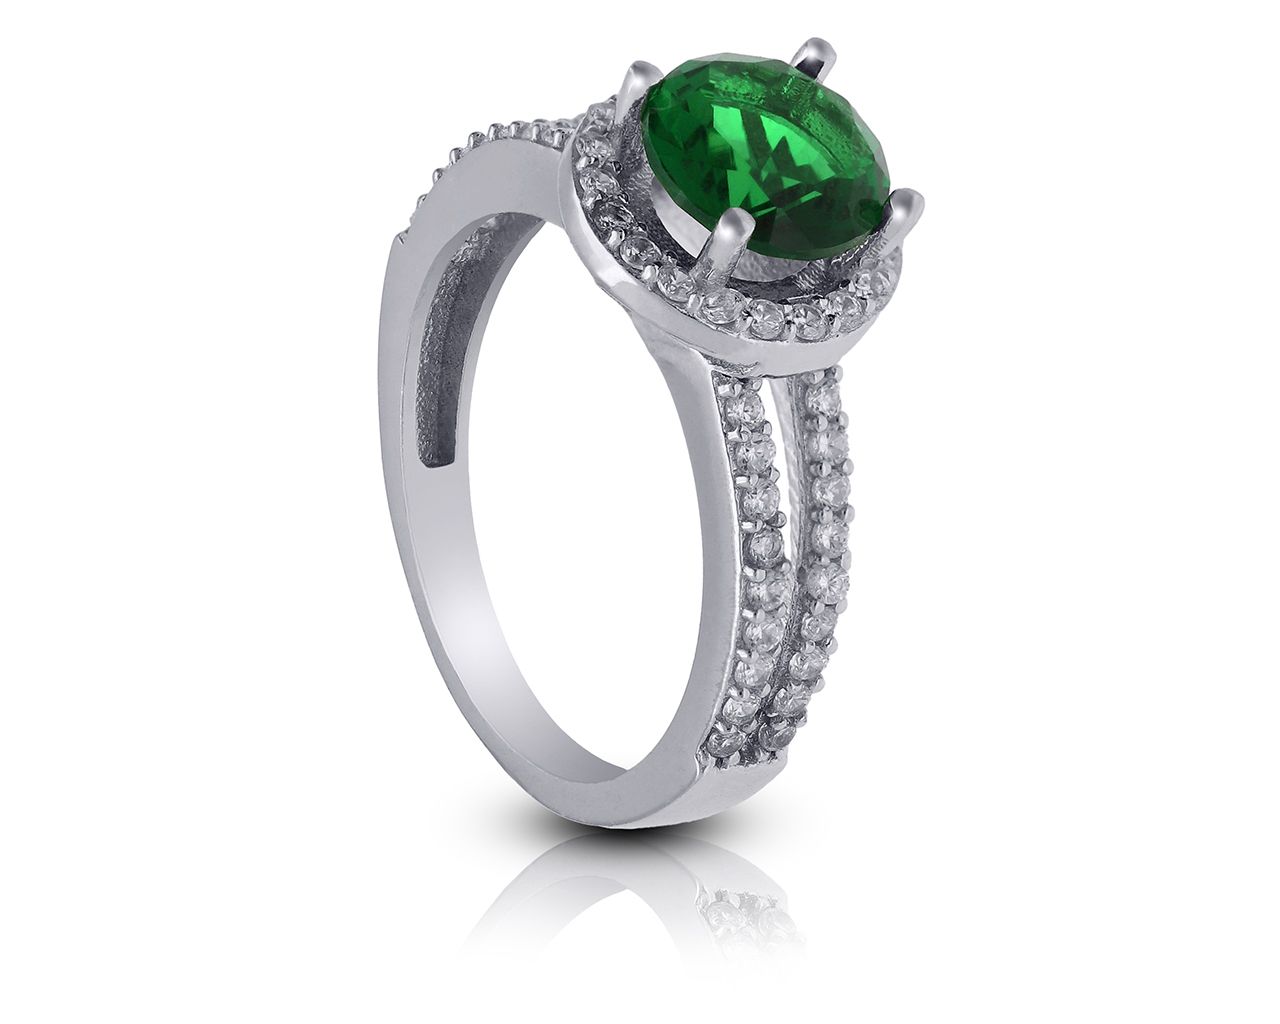 Srebrny pierścionek zielona okrągła cyrkonia